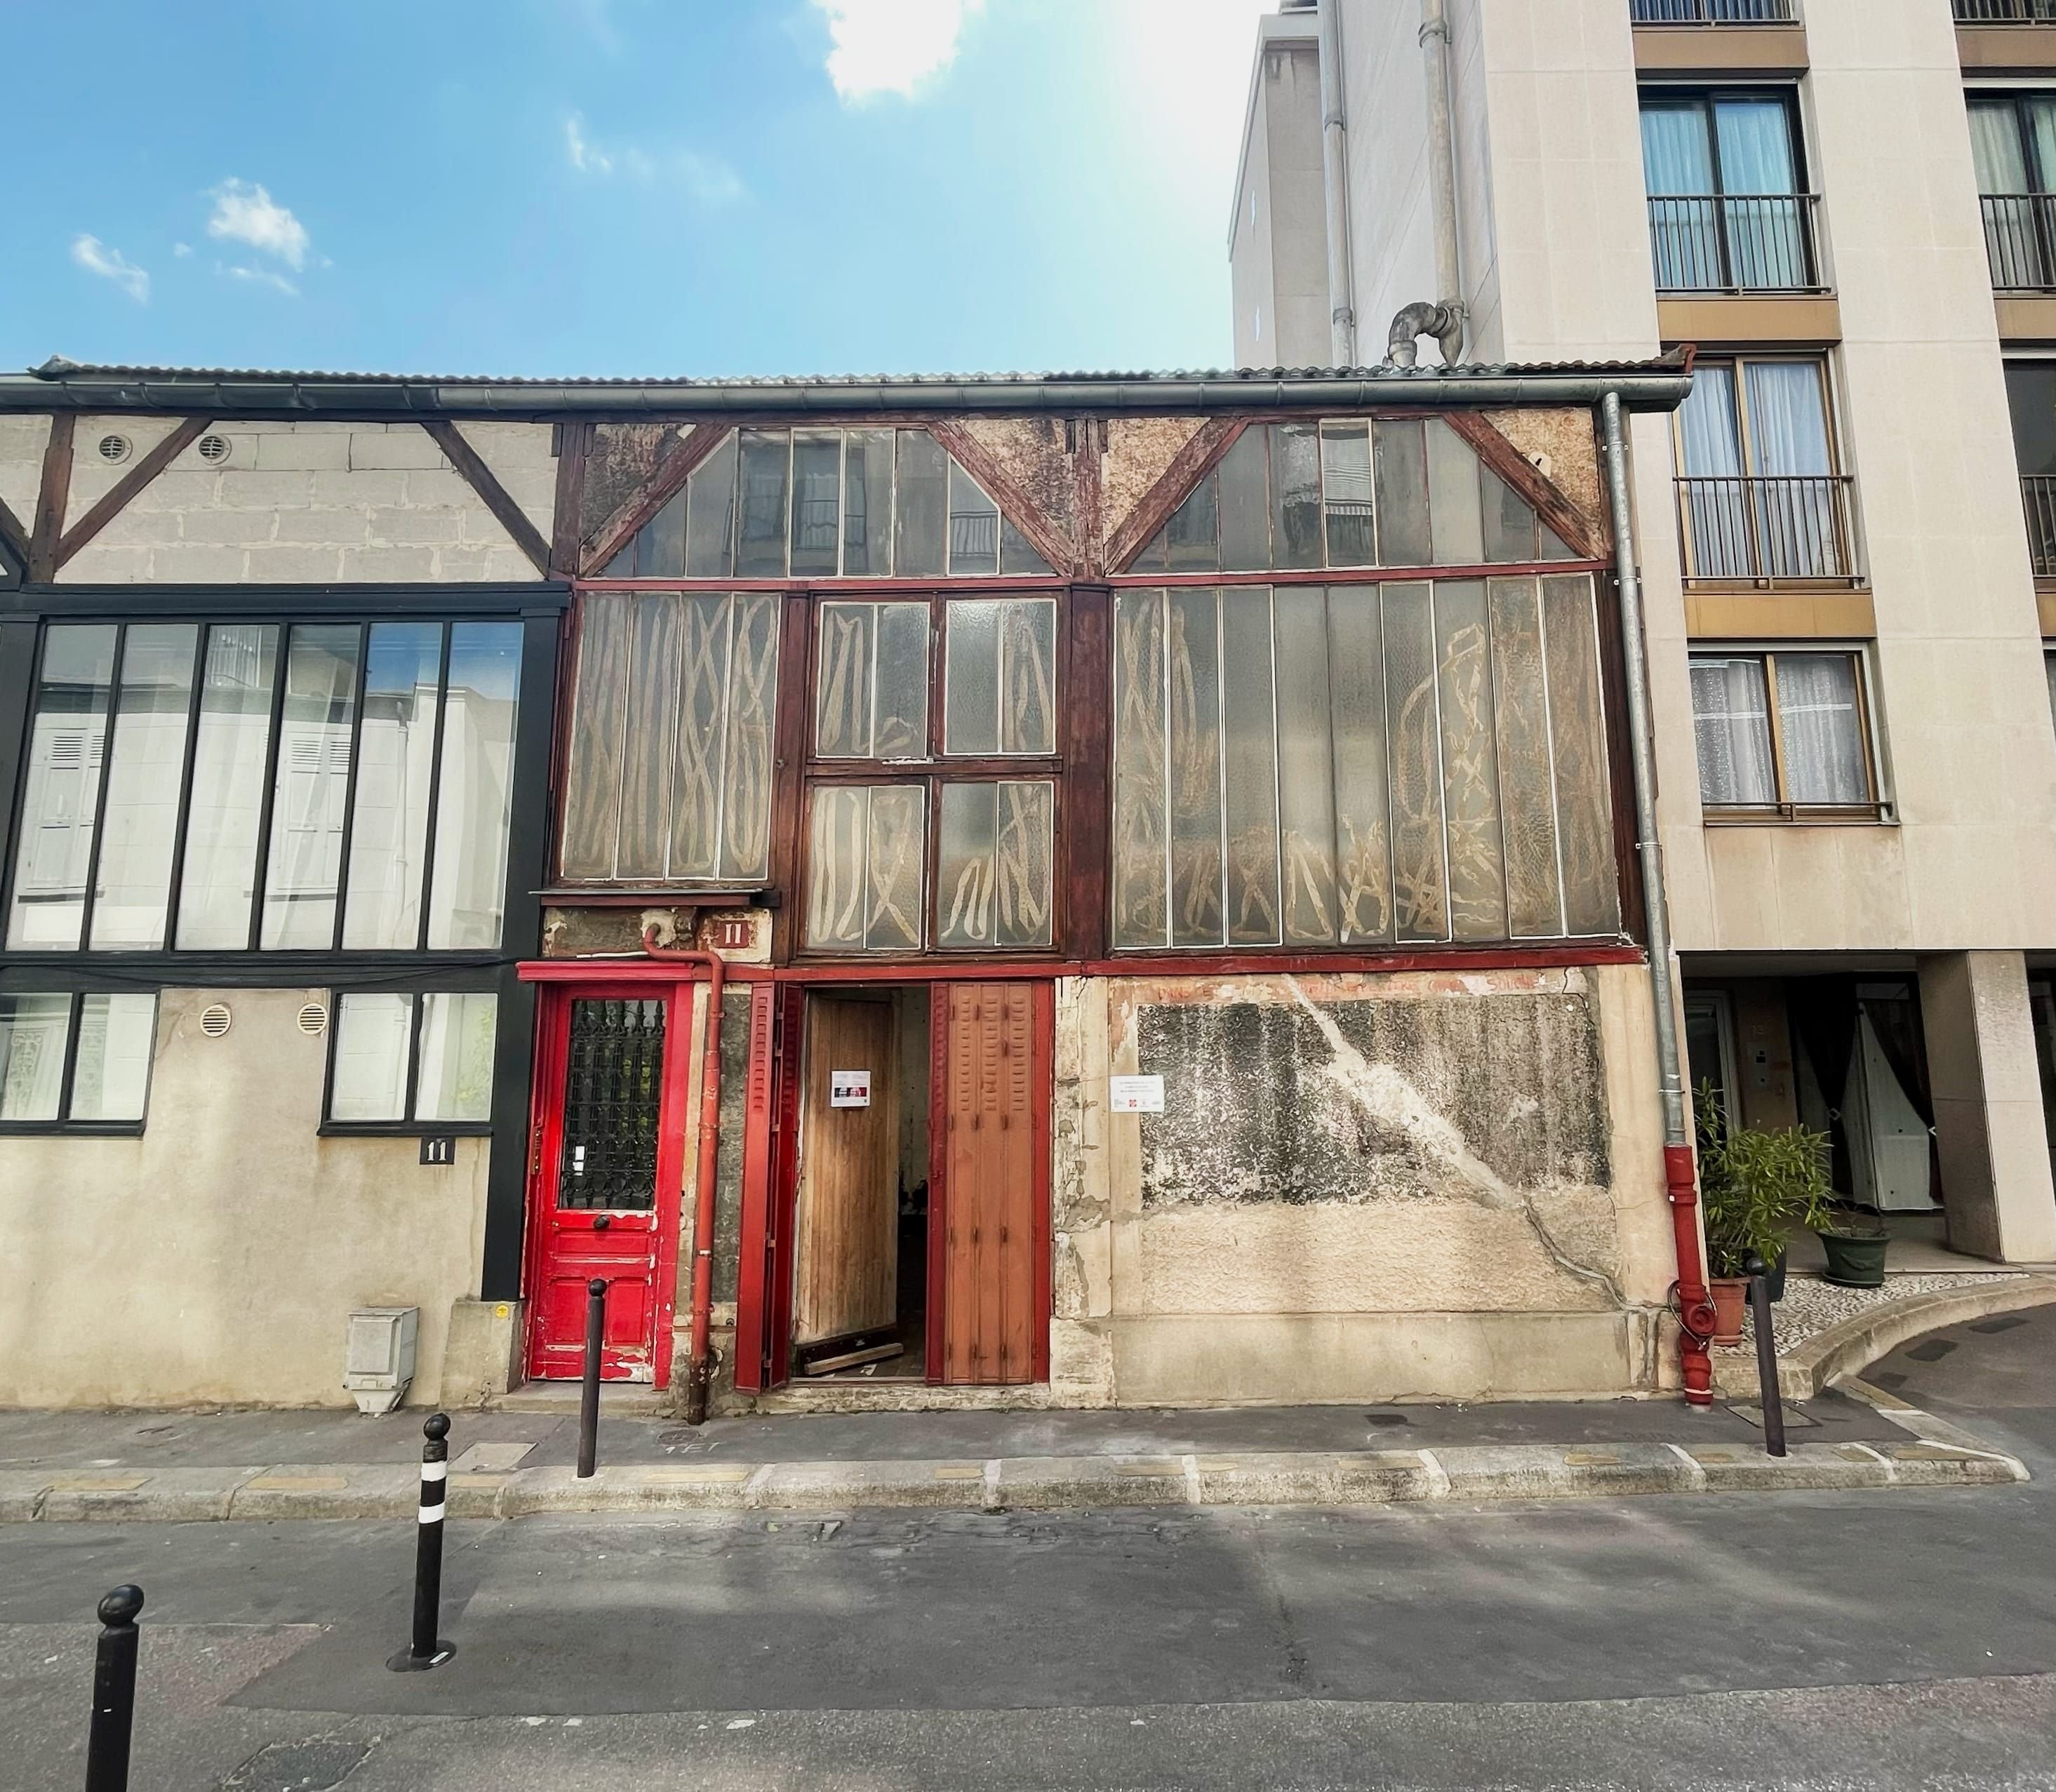 L'atelier 11, dernier atelier de la cité Falguière, a besoin d'1,2 million d'euros pour financer sa restauration. LP/Estelle Dautry